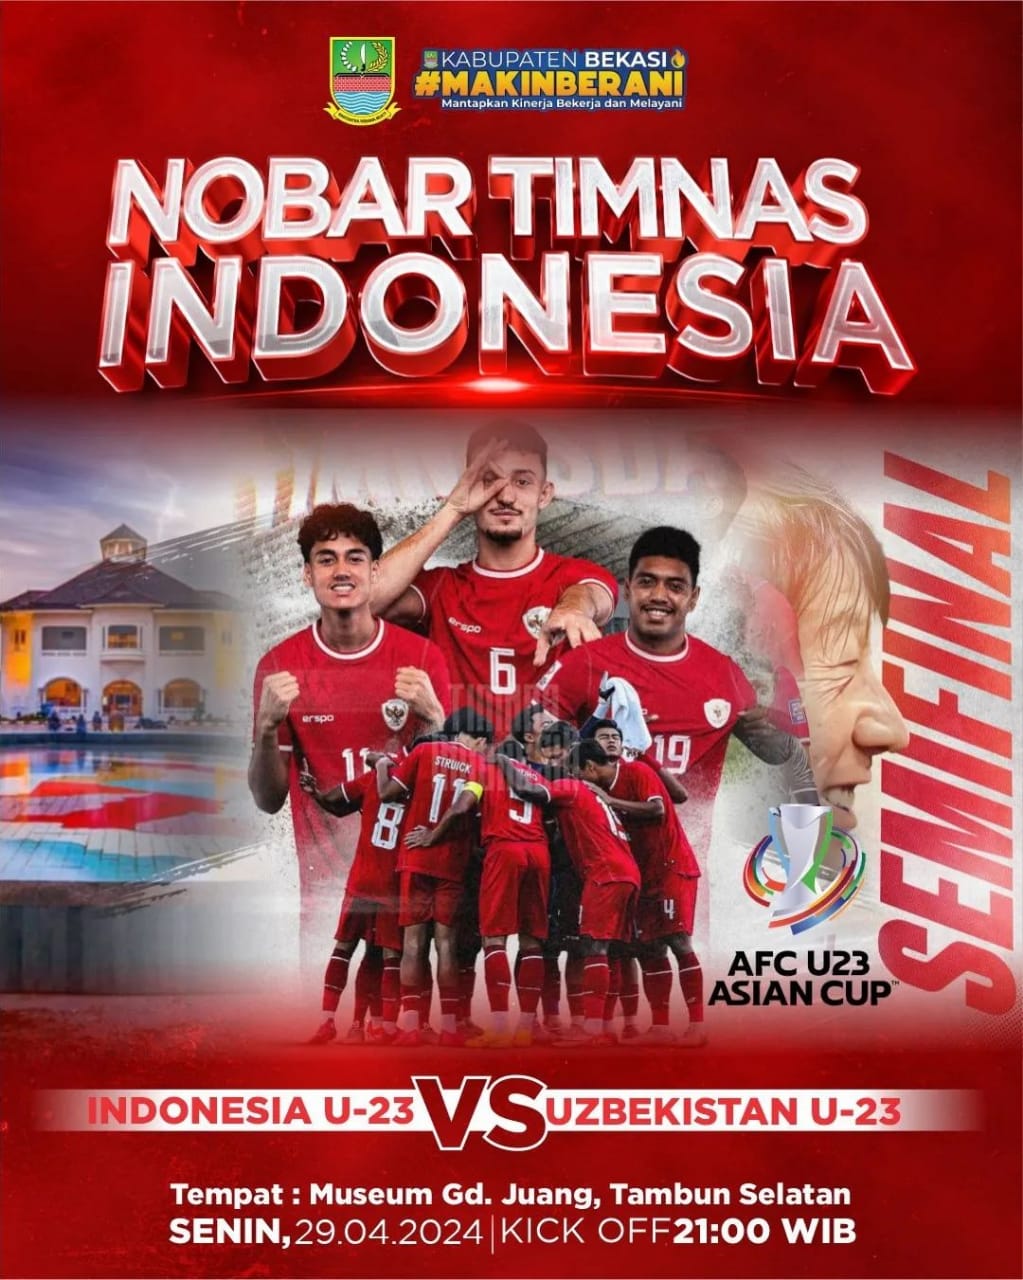 Pemkab Bekasi Gelar Nobar Semifinal Timnas Indonesia vs Uzbekistan, Catat Lokasi dan Waktunya